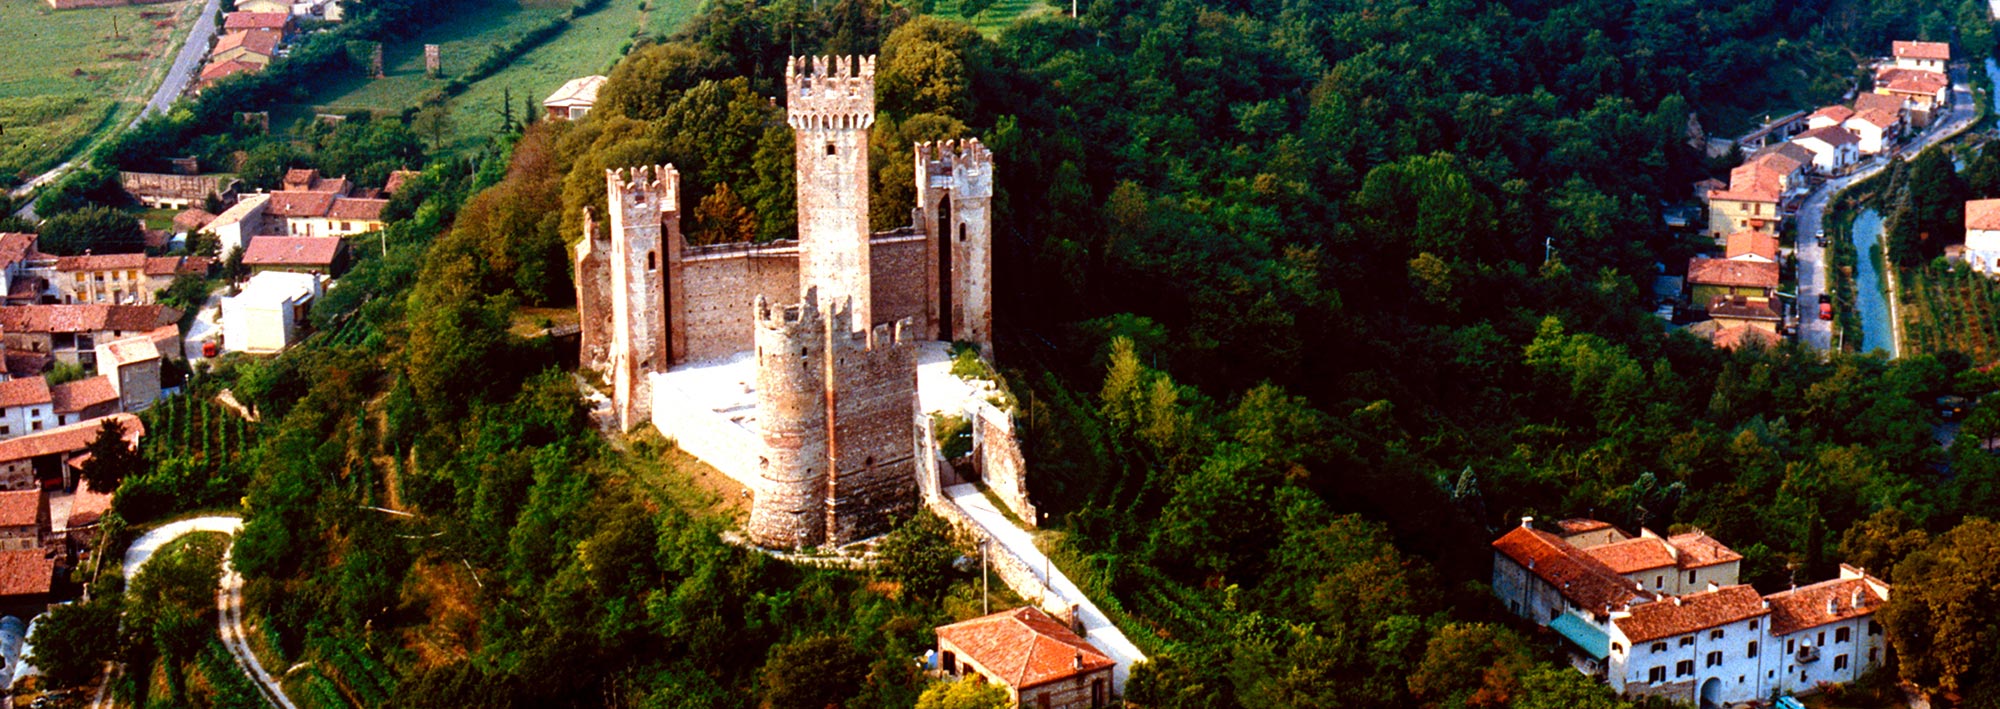 Castello di Valeggio sul Mincio (VR)